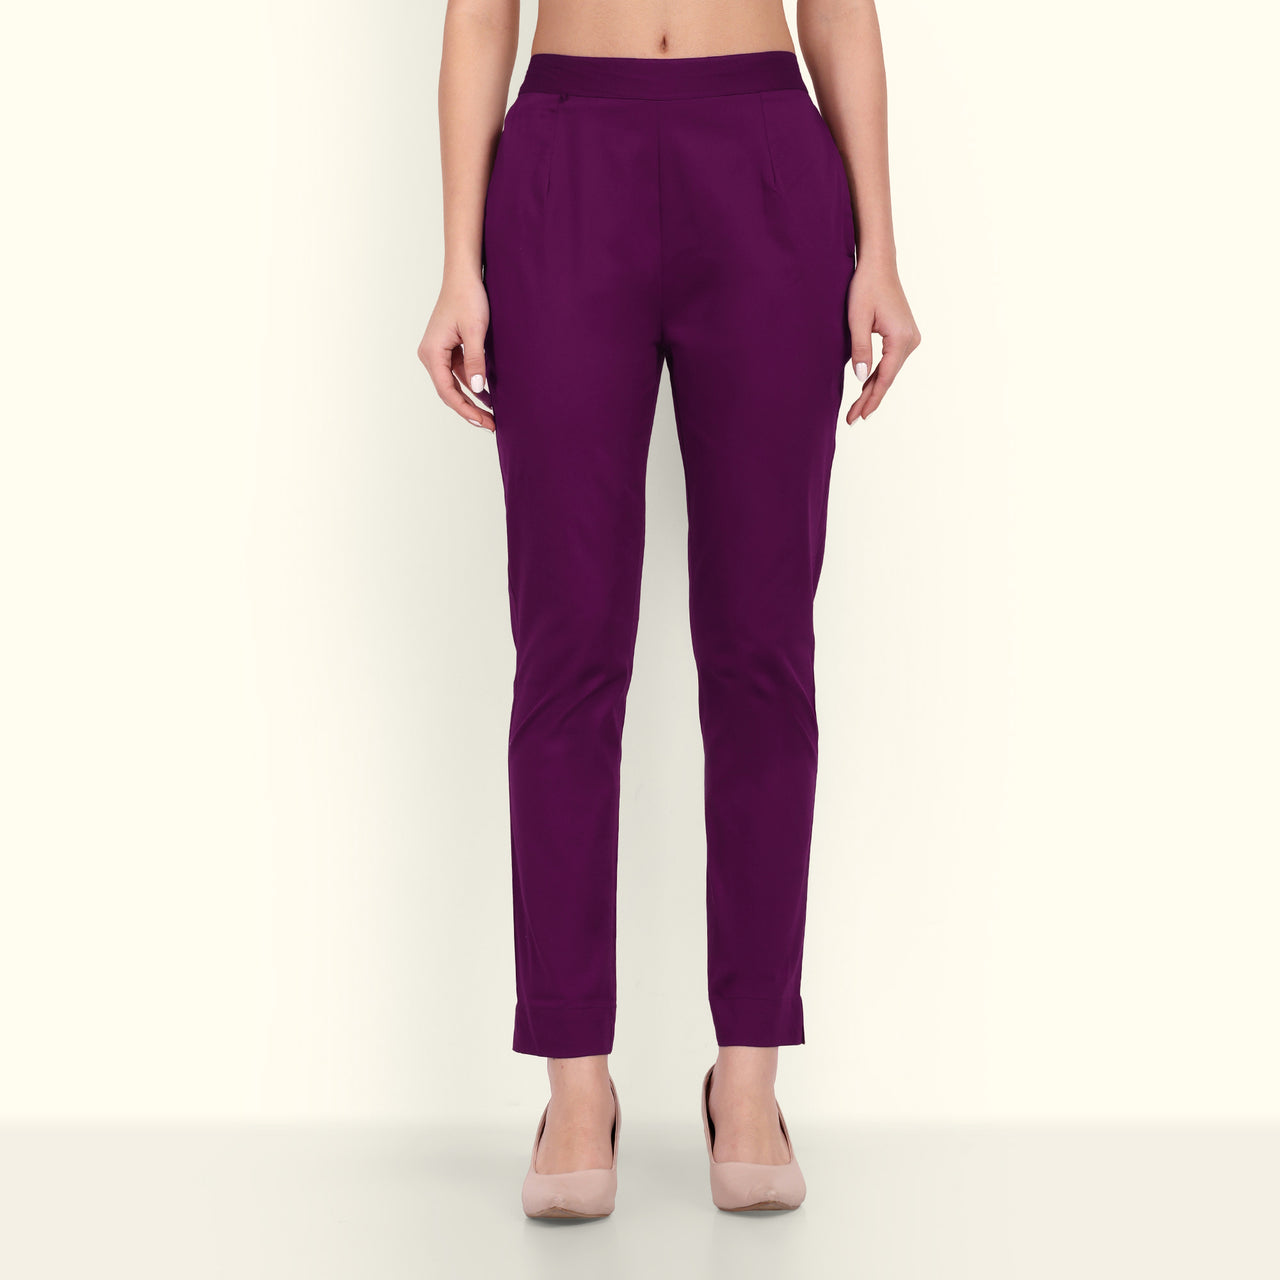 Buy Black Trousers  Pants for Women by VISIT WEAR Online  Ajiocom